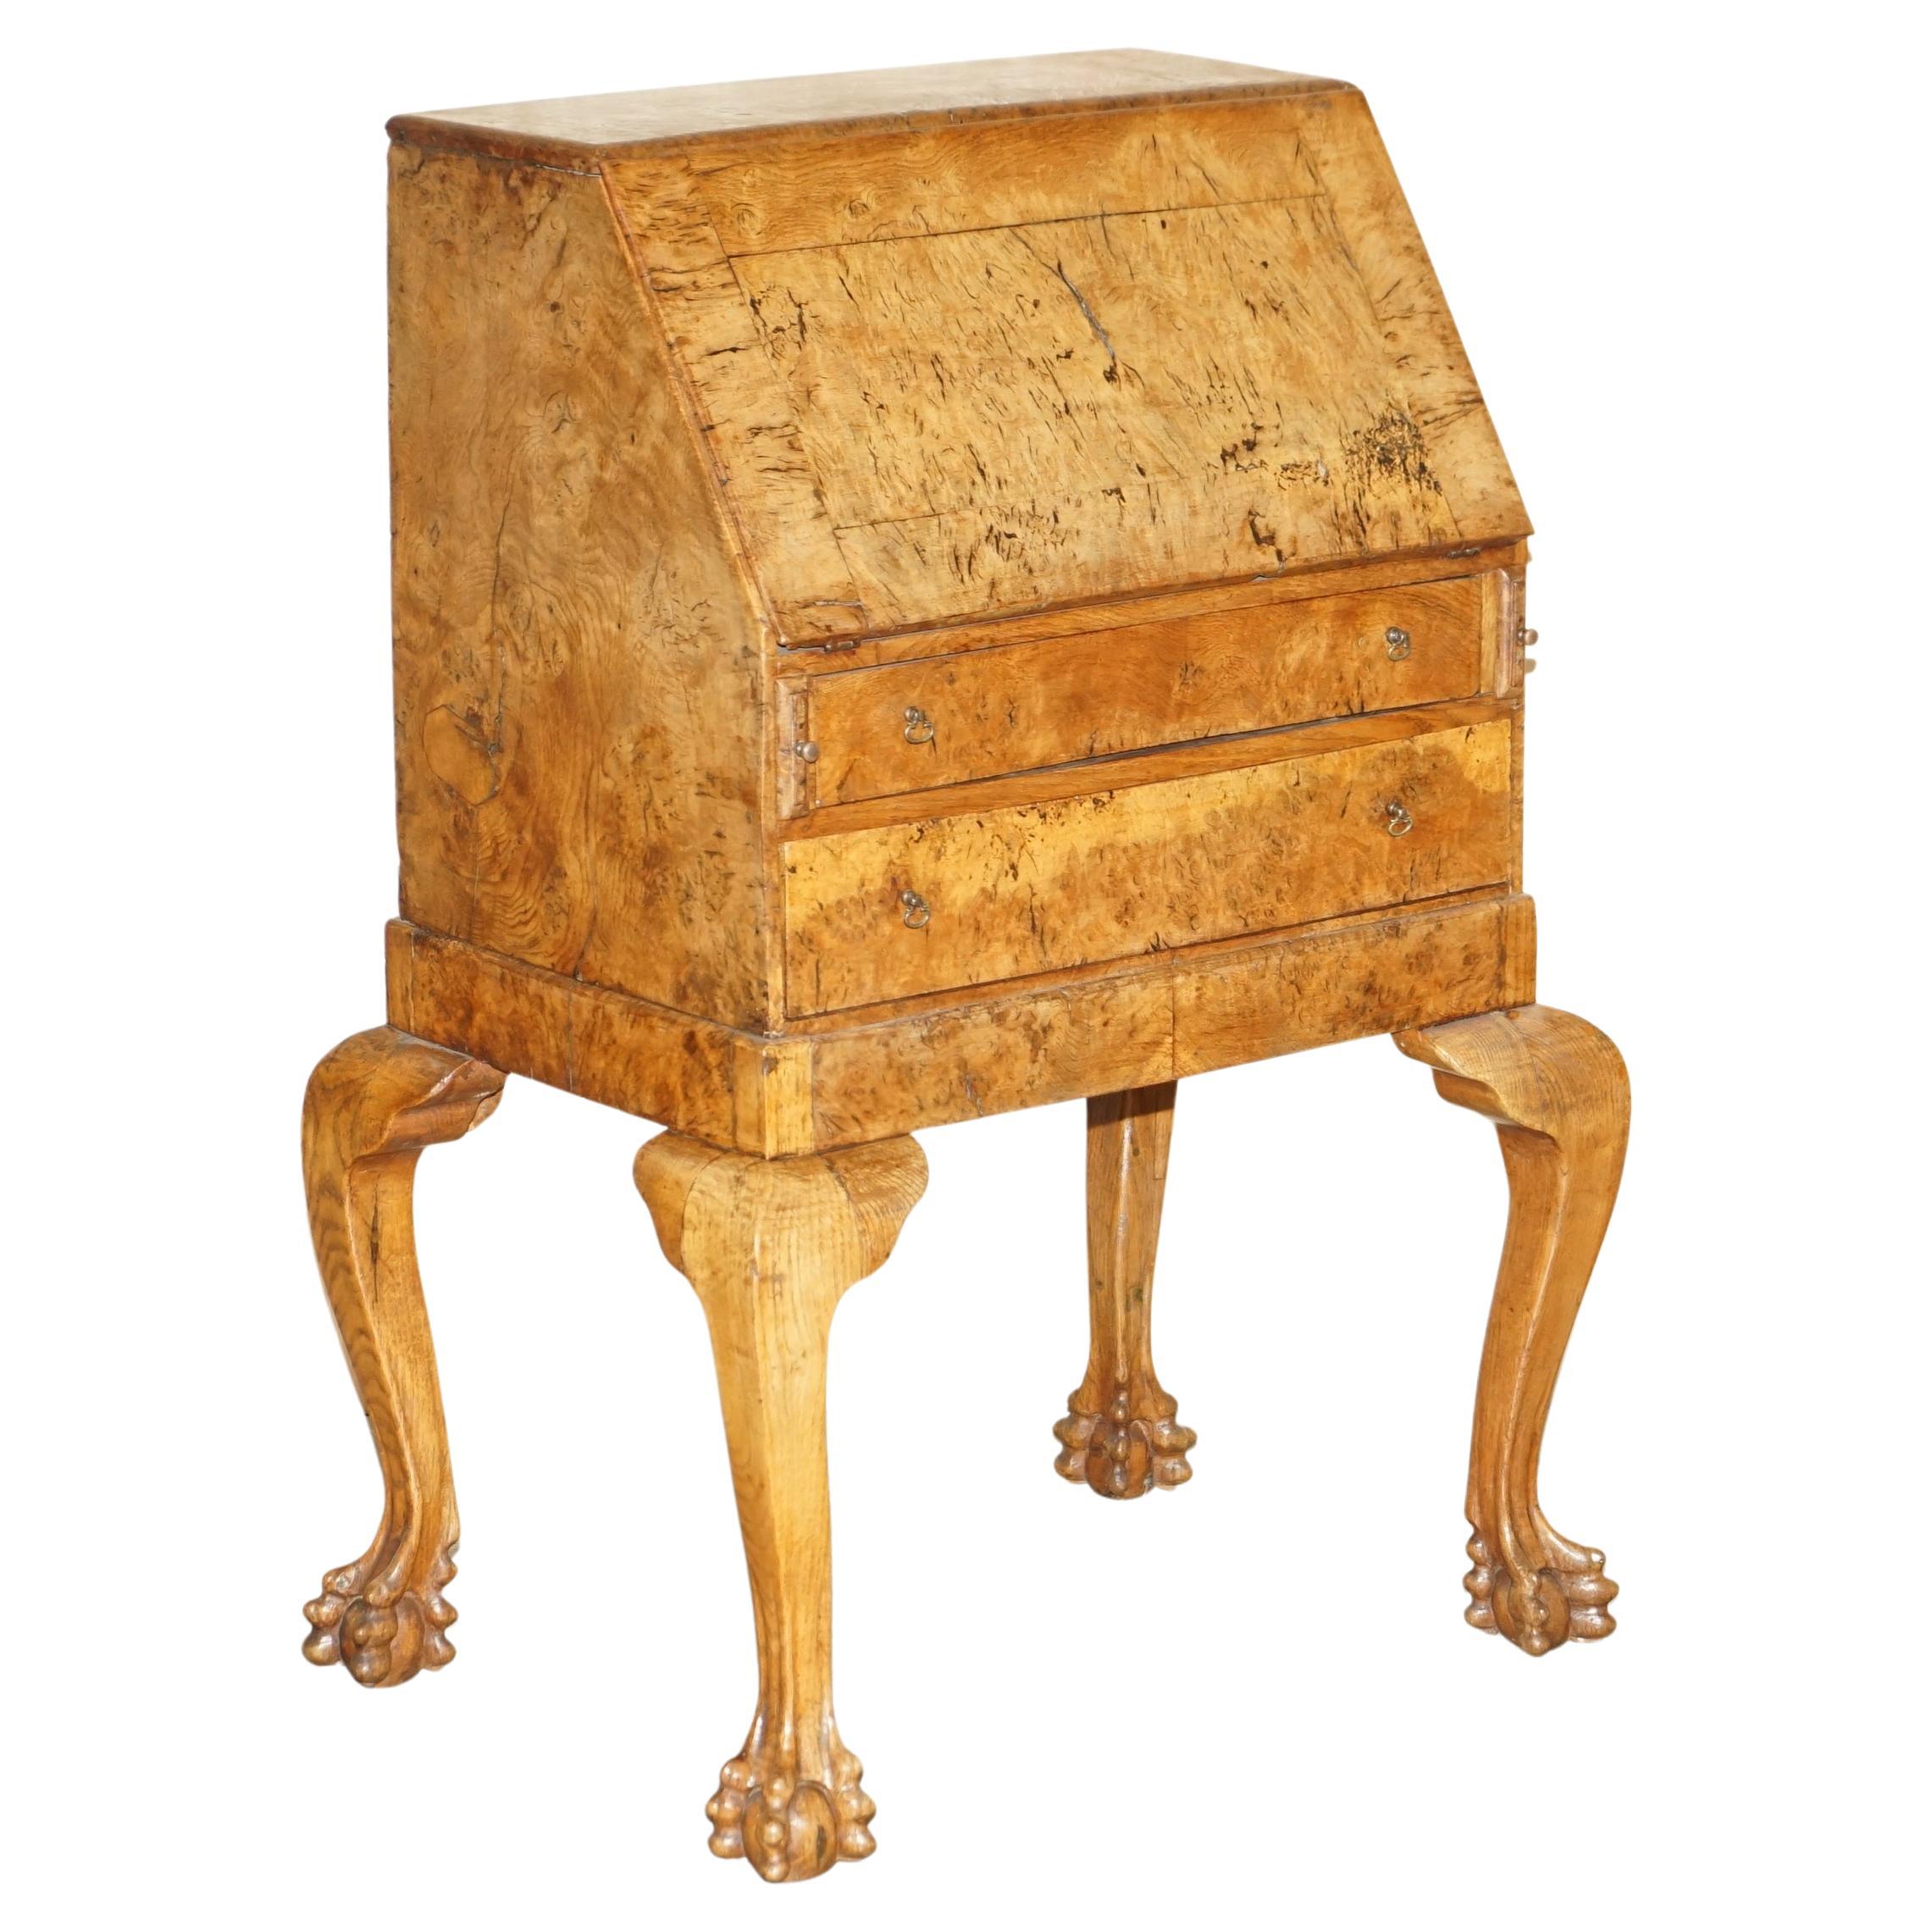 Schreibtisch aus gepolsterter Eiche, um 1800, Klauen- und Kugelförmige handgeschnitzte Beine